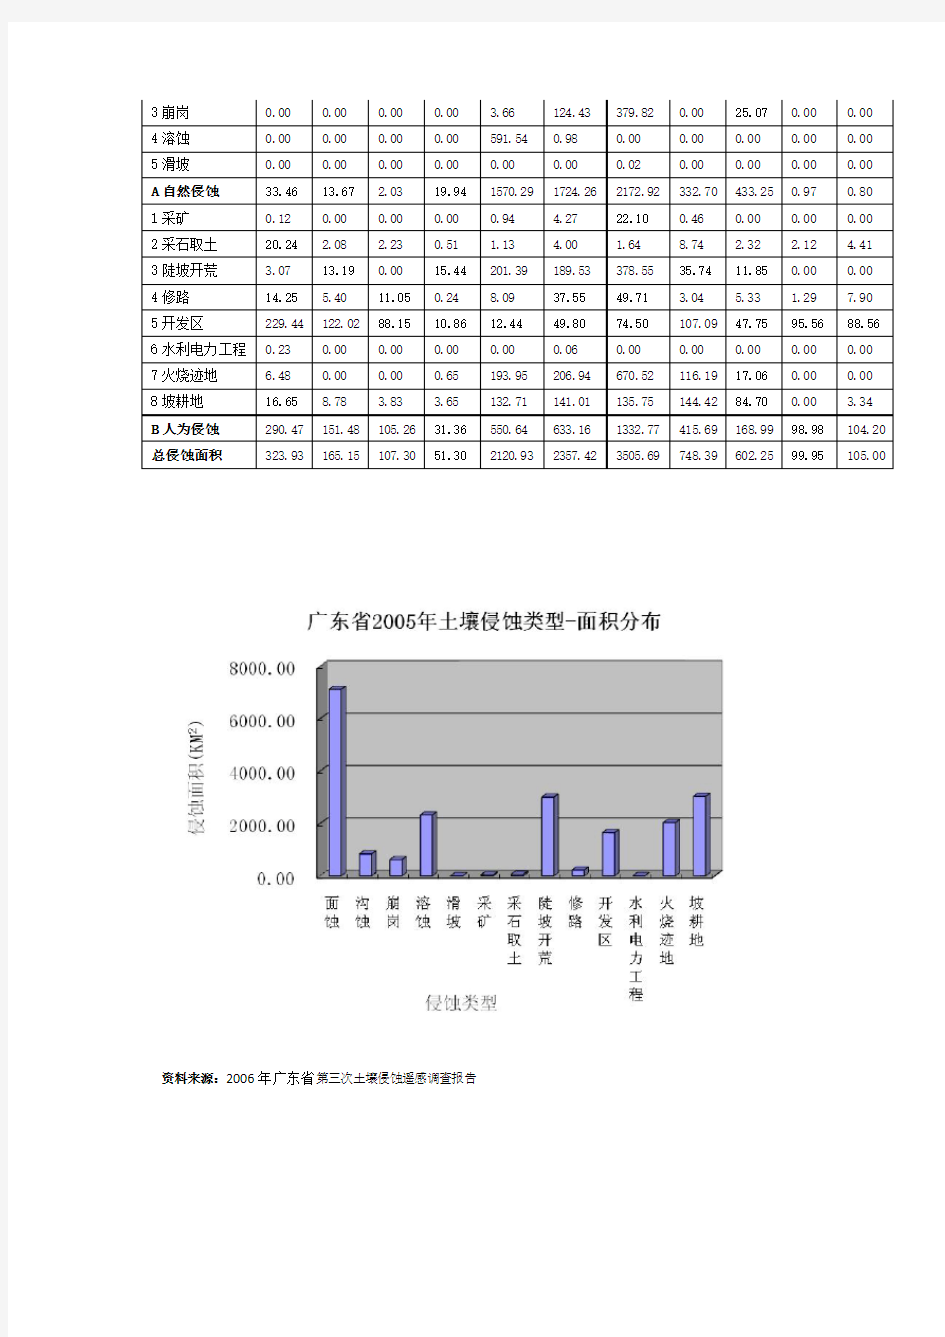 广东省各类型侵蚀面积与强度(2006年广东省第三次土壤侵蚀遥感调查报告)